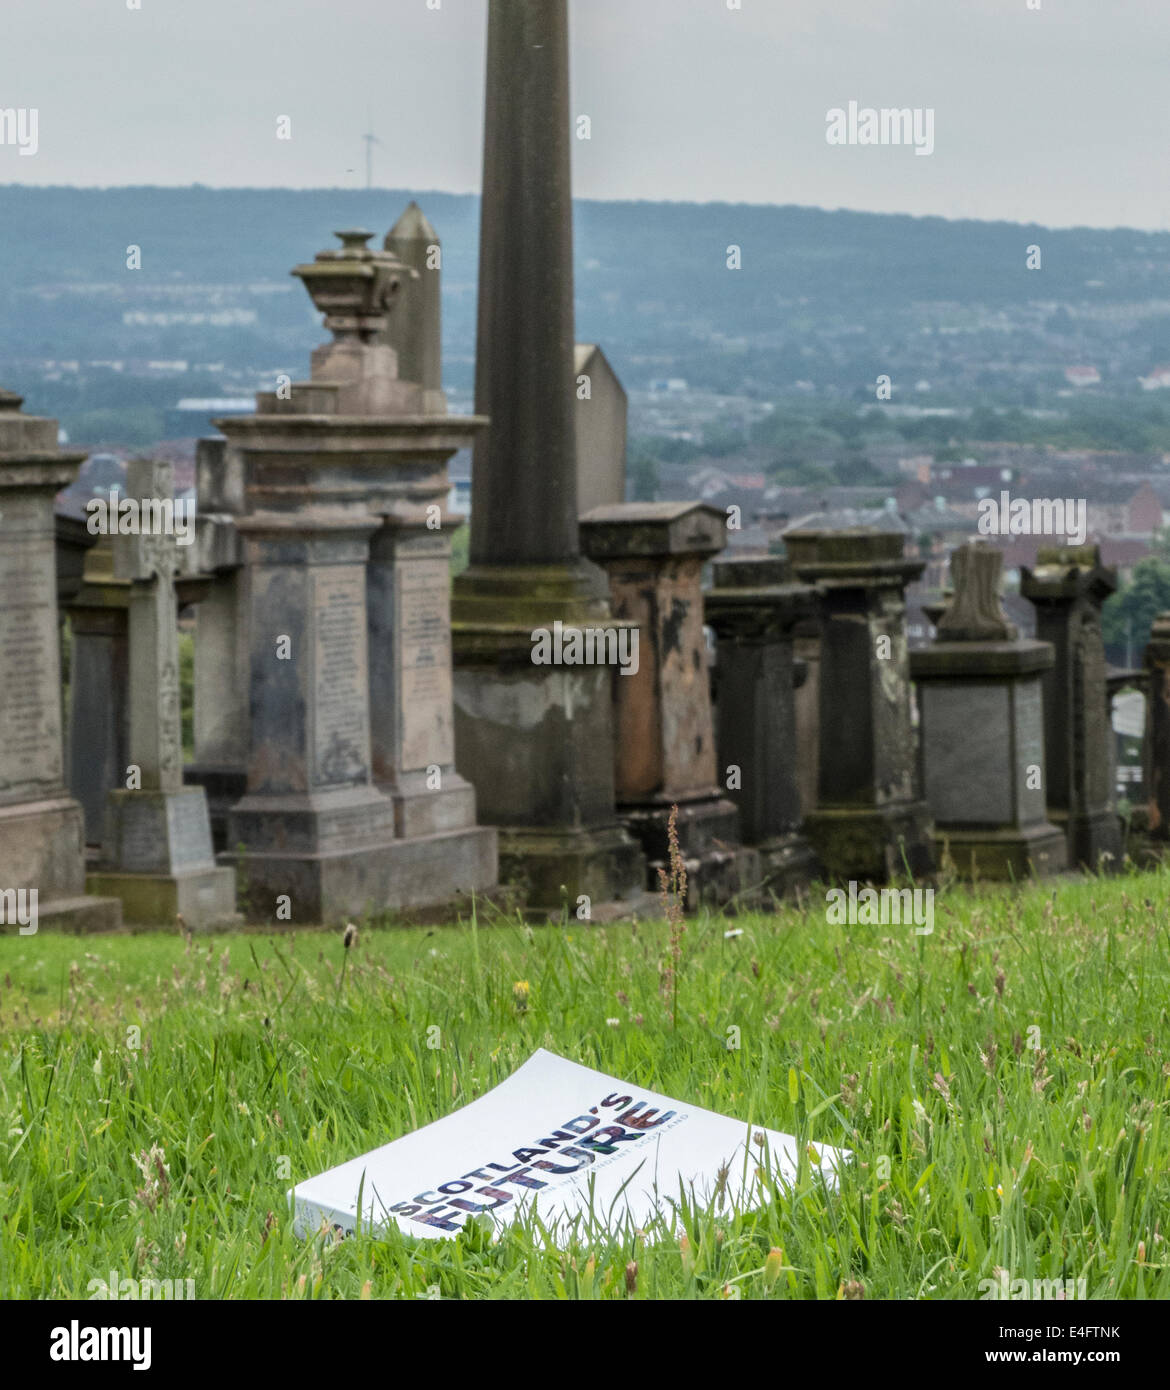 Schottlands Zukunft veröffentlicht ein Handbuch von der schottischen Regierung über die Unabhängigkeit gesehen Verlegung in Glasgow Necropolis. Stockfoto